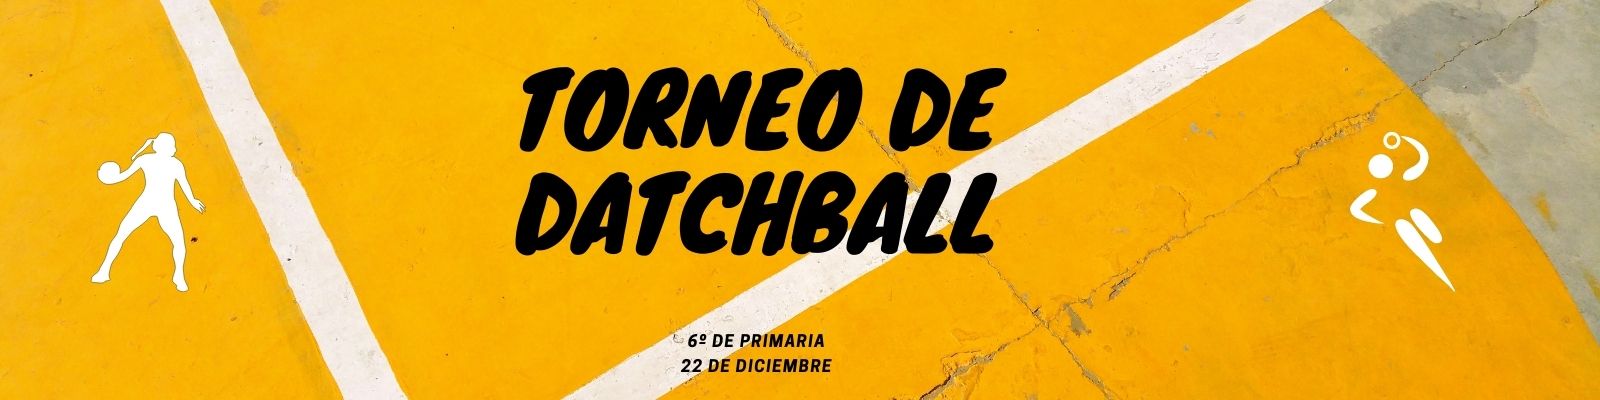 Campeonato de Datchball